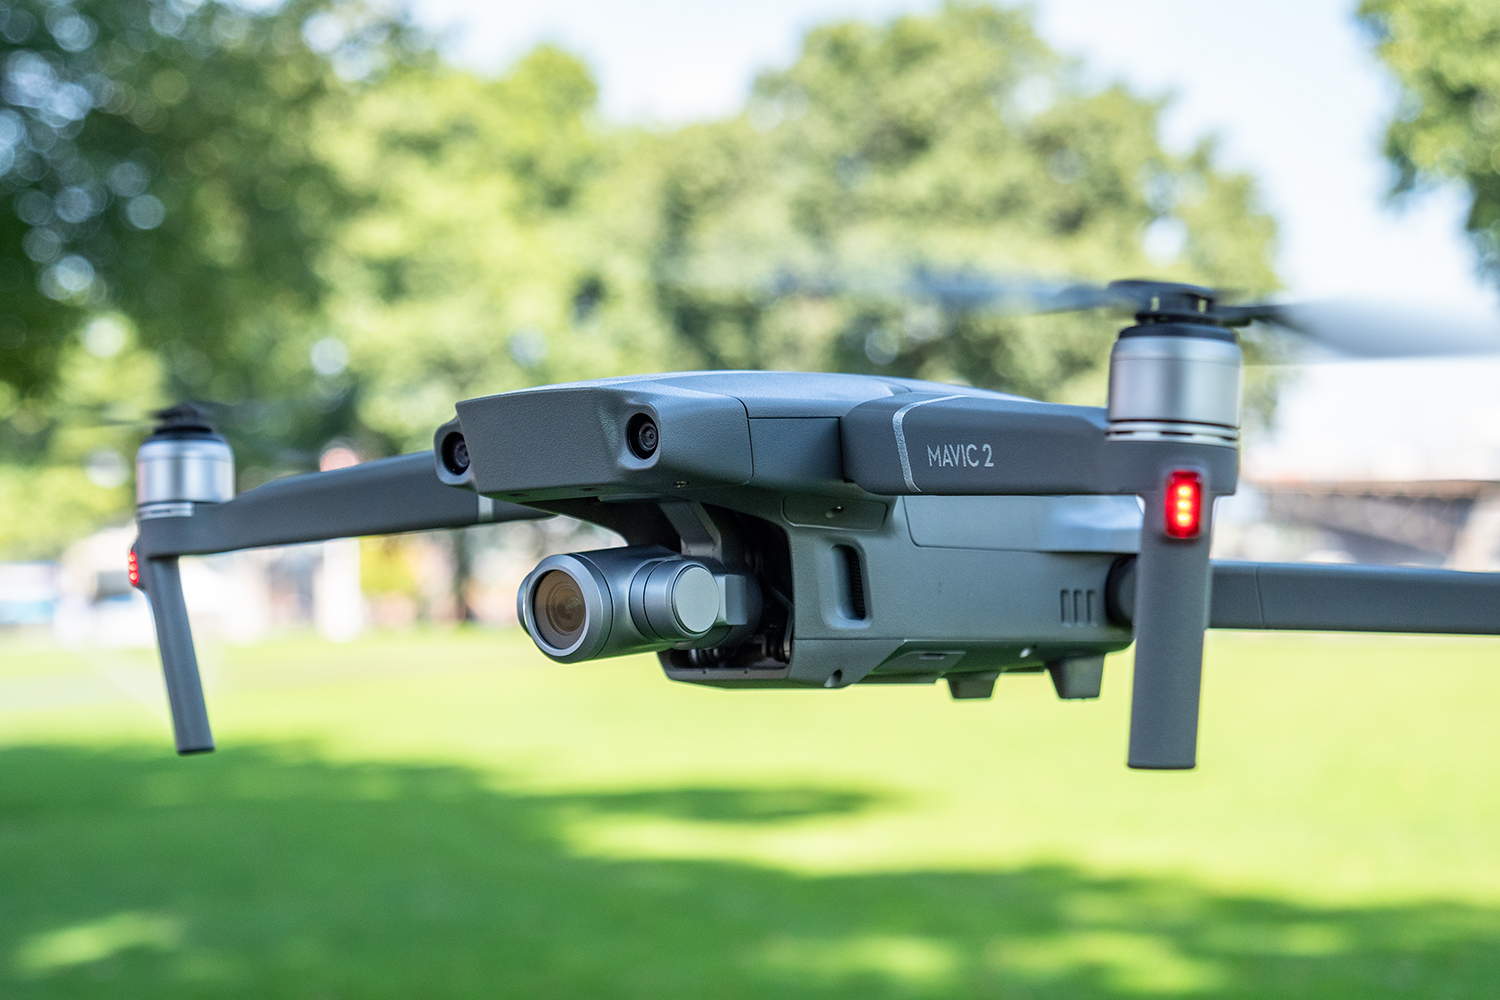 DJI Mavic 2 Pro drone review